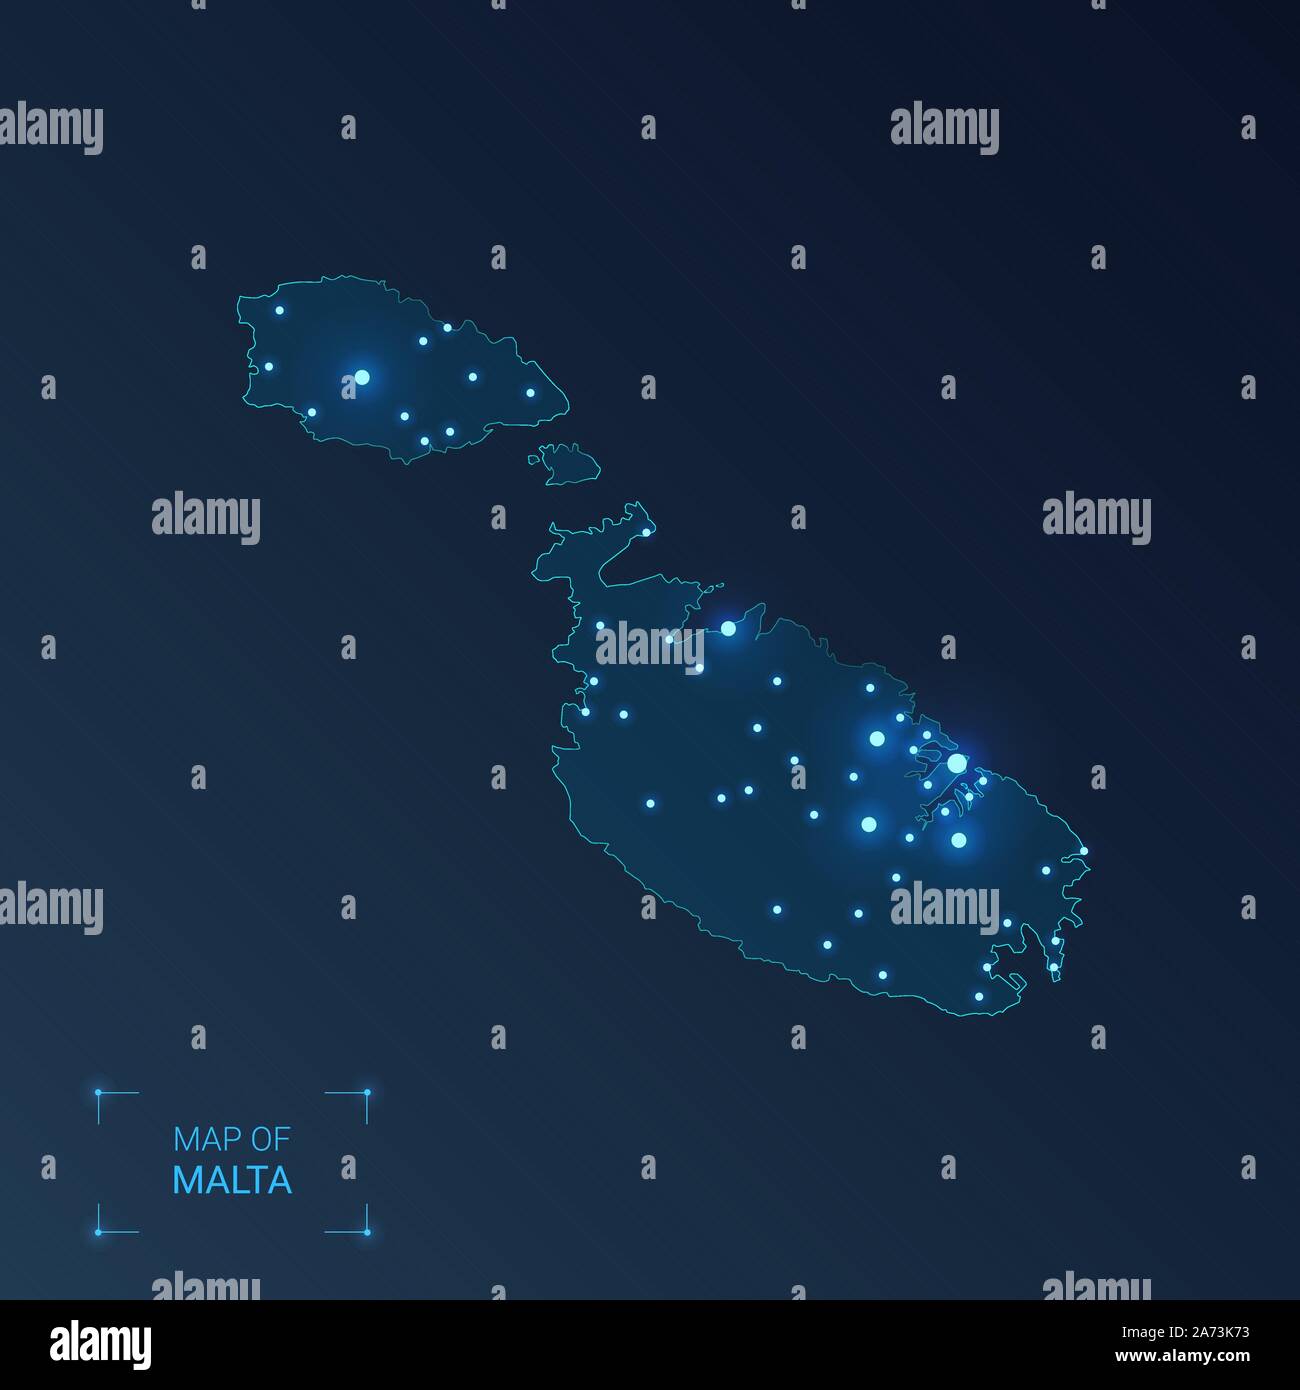 Malta map with cities. Luminous dots - neon lights on dark background. Vector illustration. Stock Vector